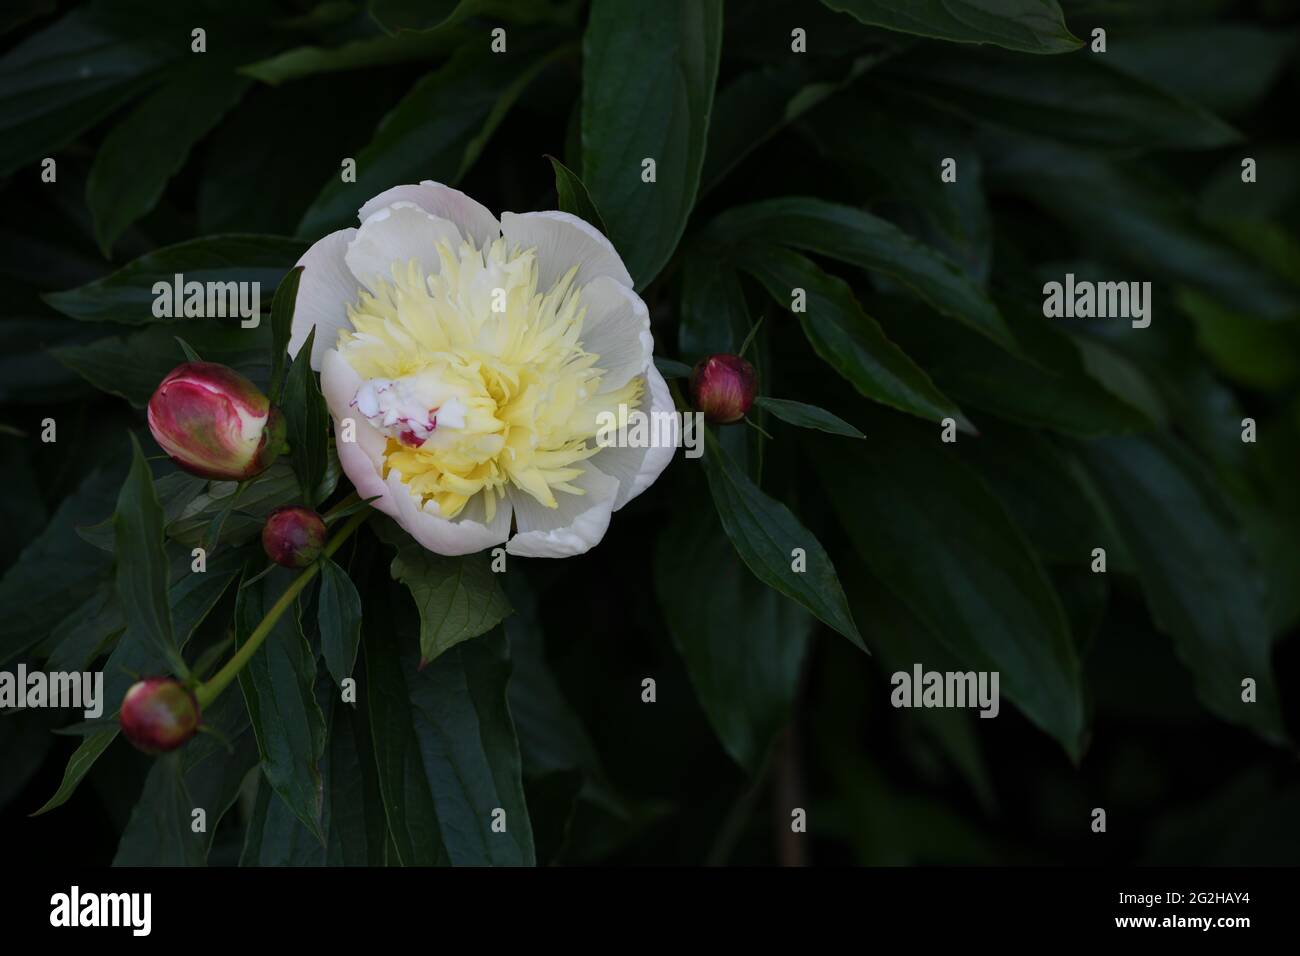 Blüte einer wunderschönen aufgegangenen Pfingstrosenblüte mit etlichen noch geschlossenen Knospen gegen das Grün ihrer Blätter Foto Stock